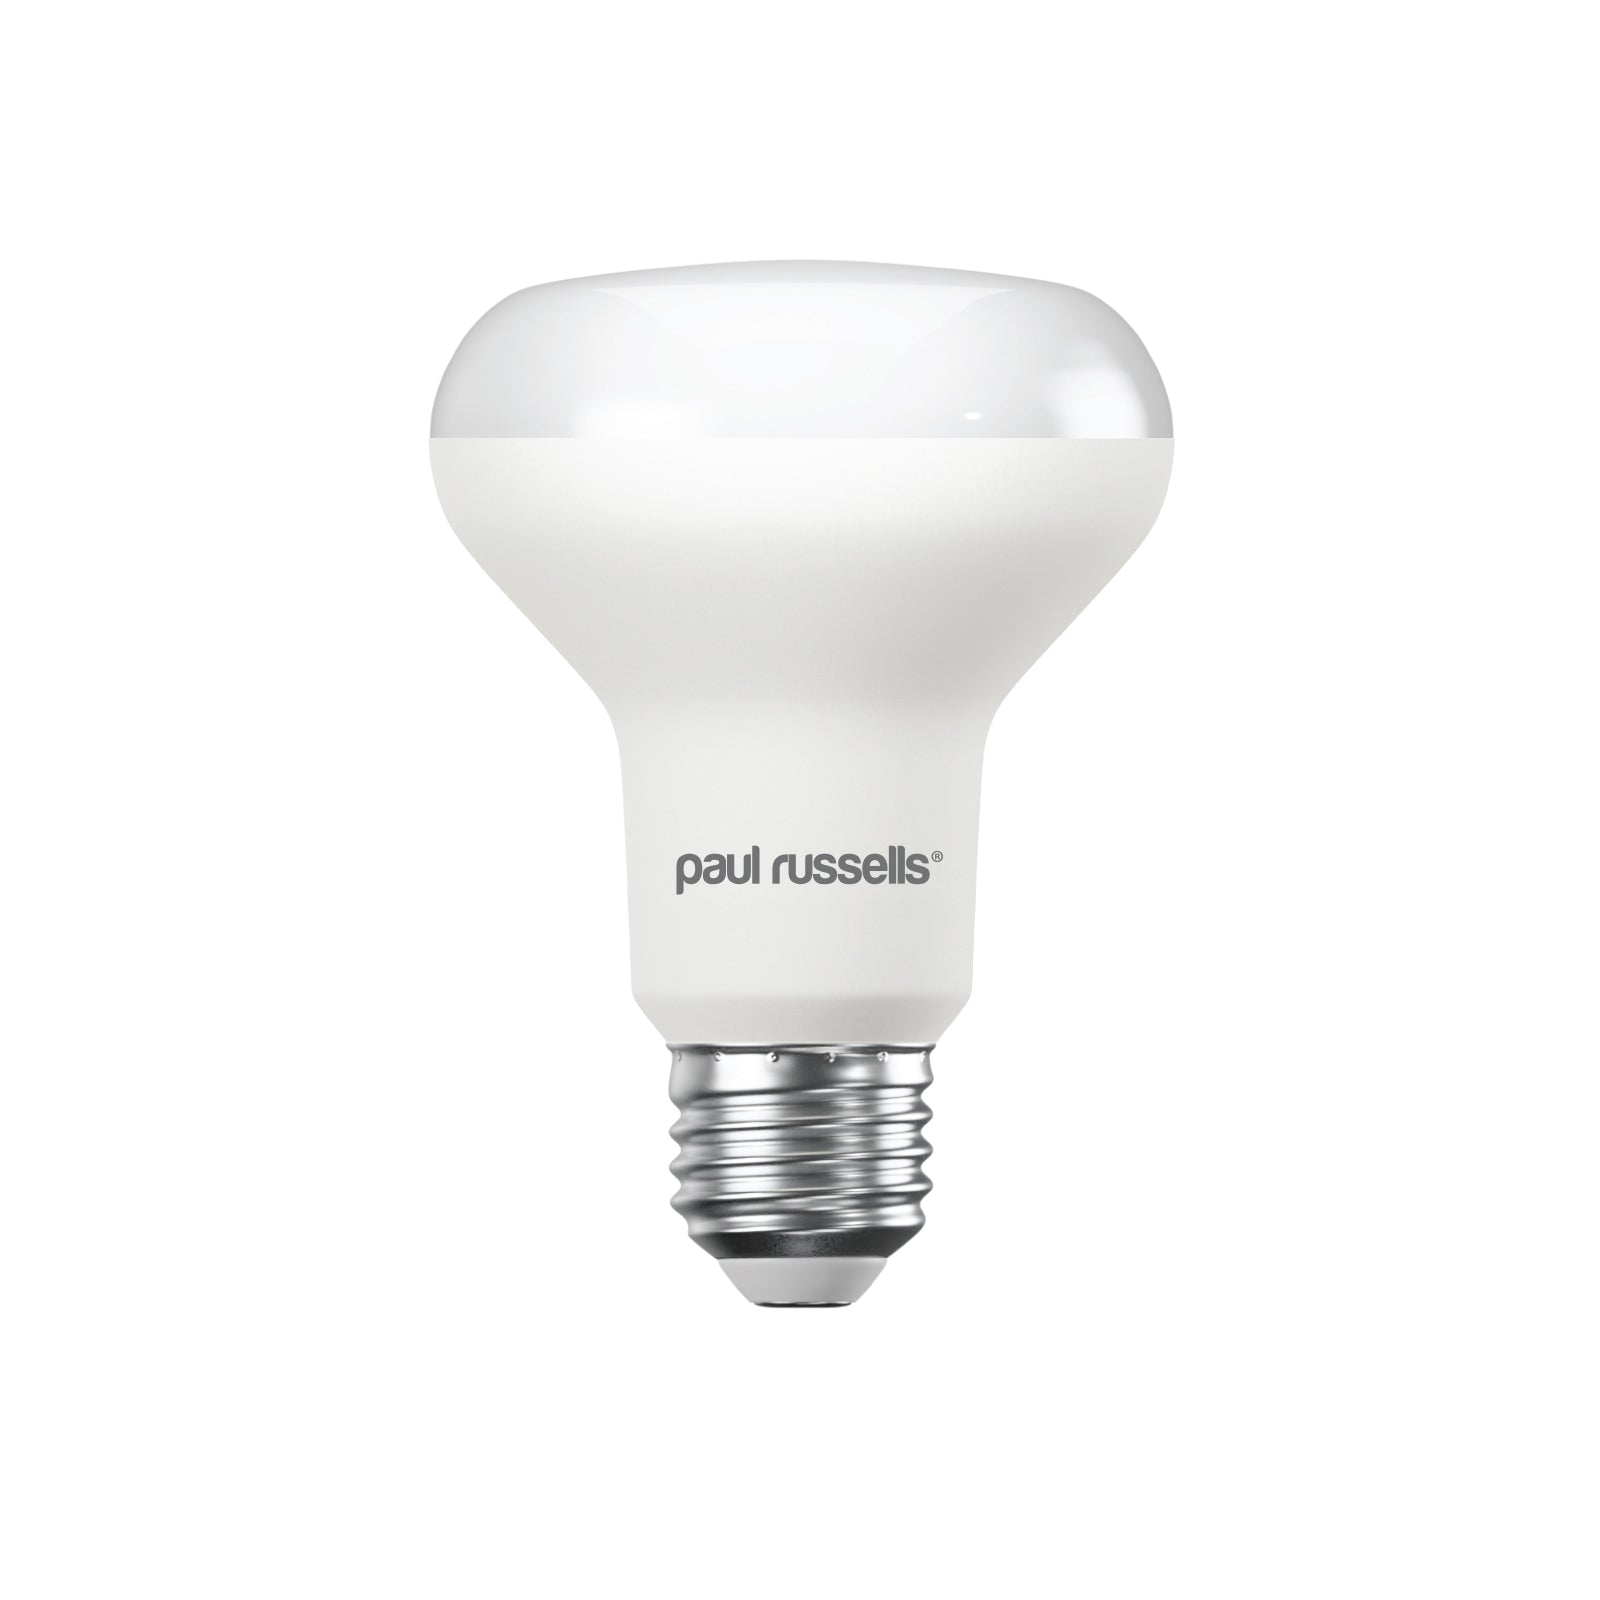 LED R80 11W (75w), ES/E27, 1050 Lumens, Warm White(2700K), 240V